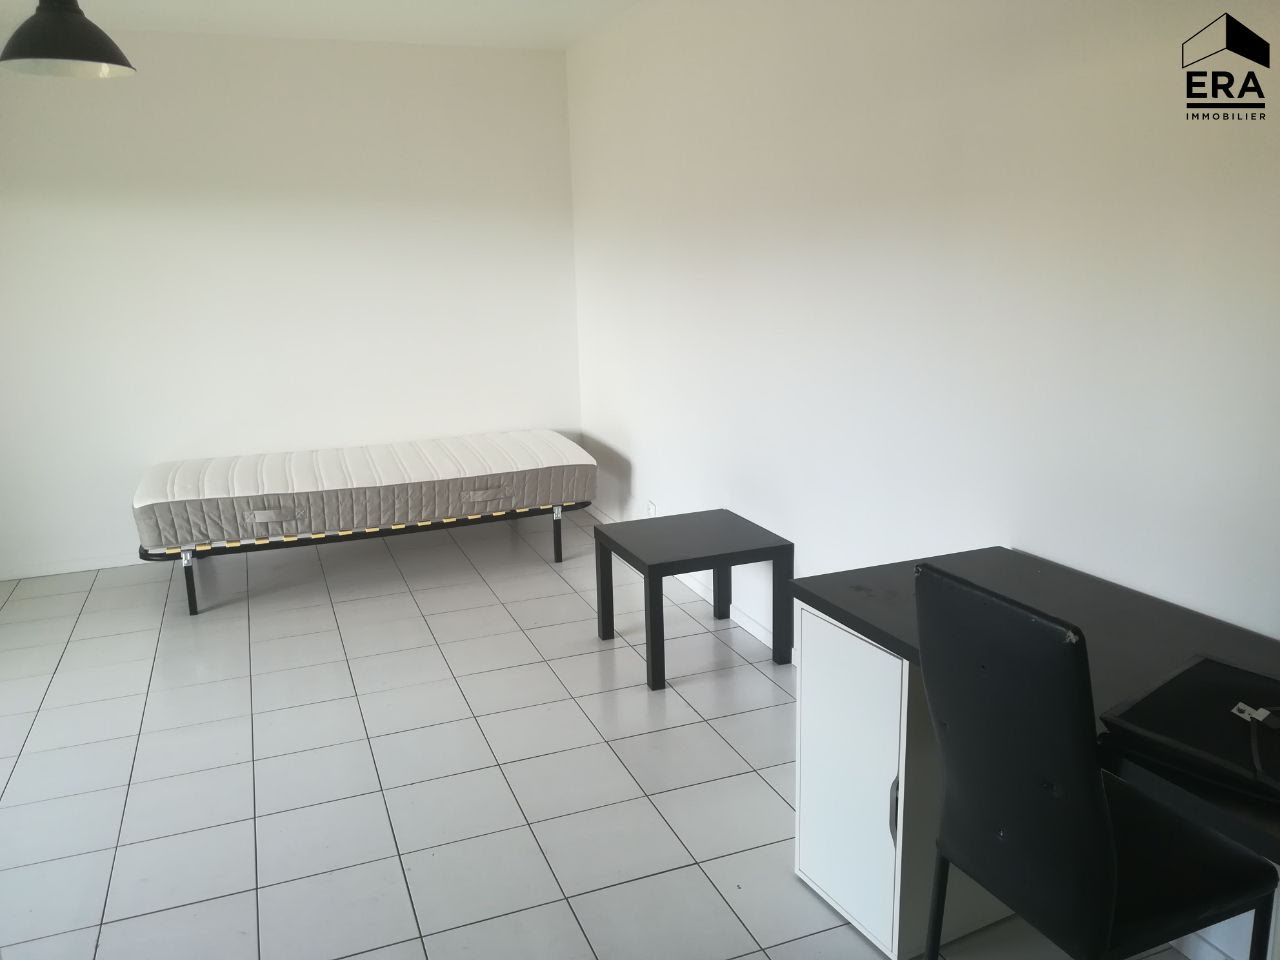 Location studio 28,51 m2